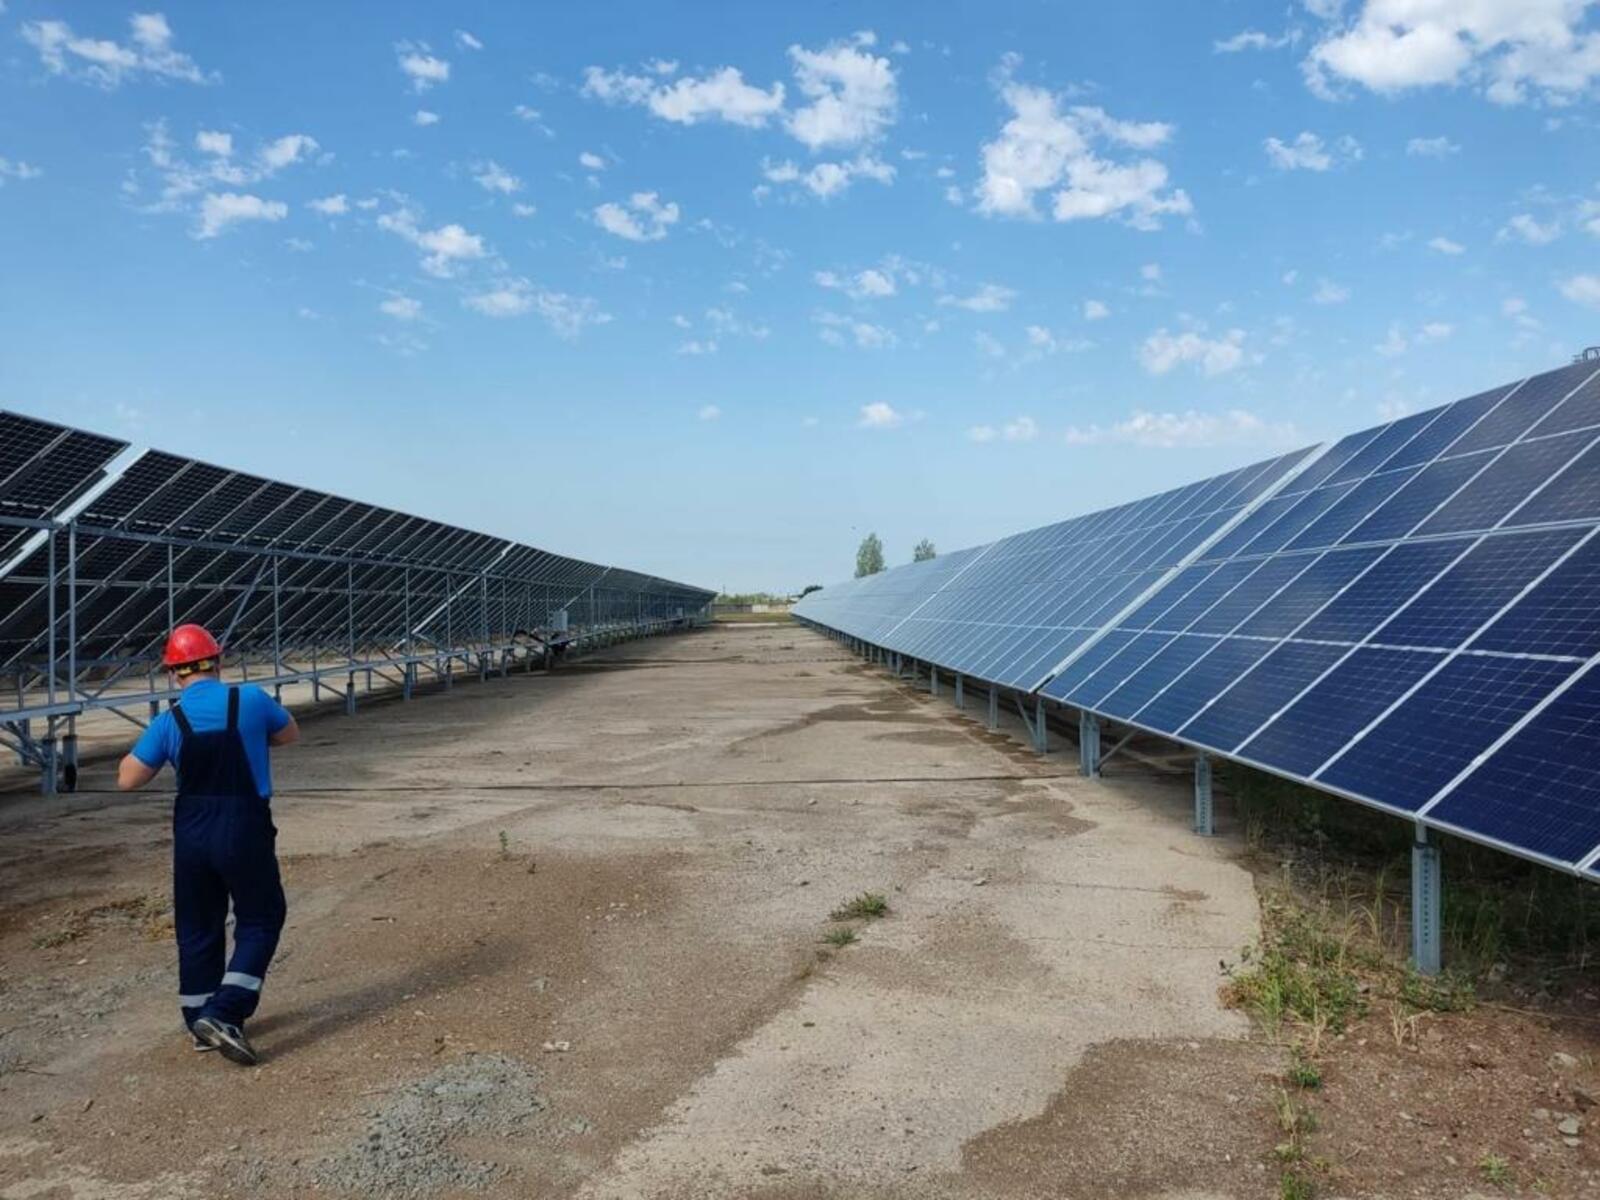 Дан старт солнечной электростанции в Агидели